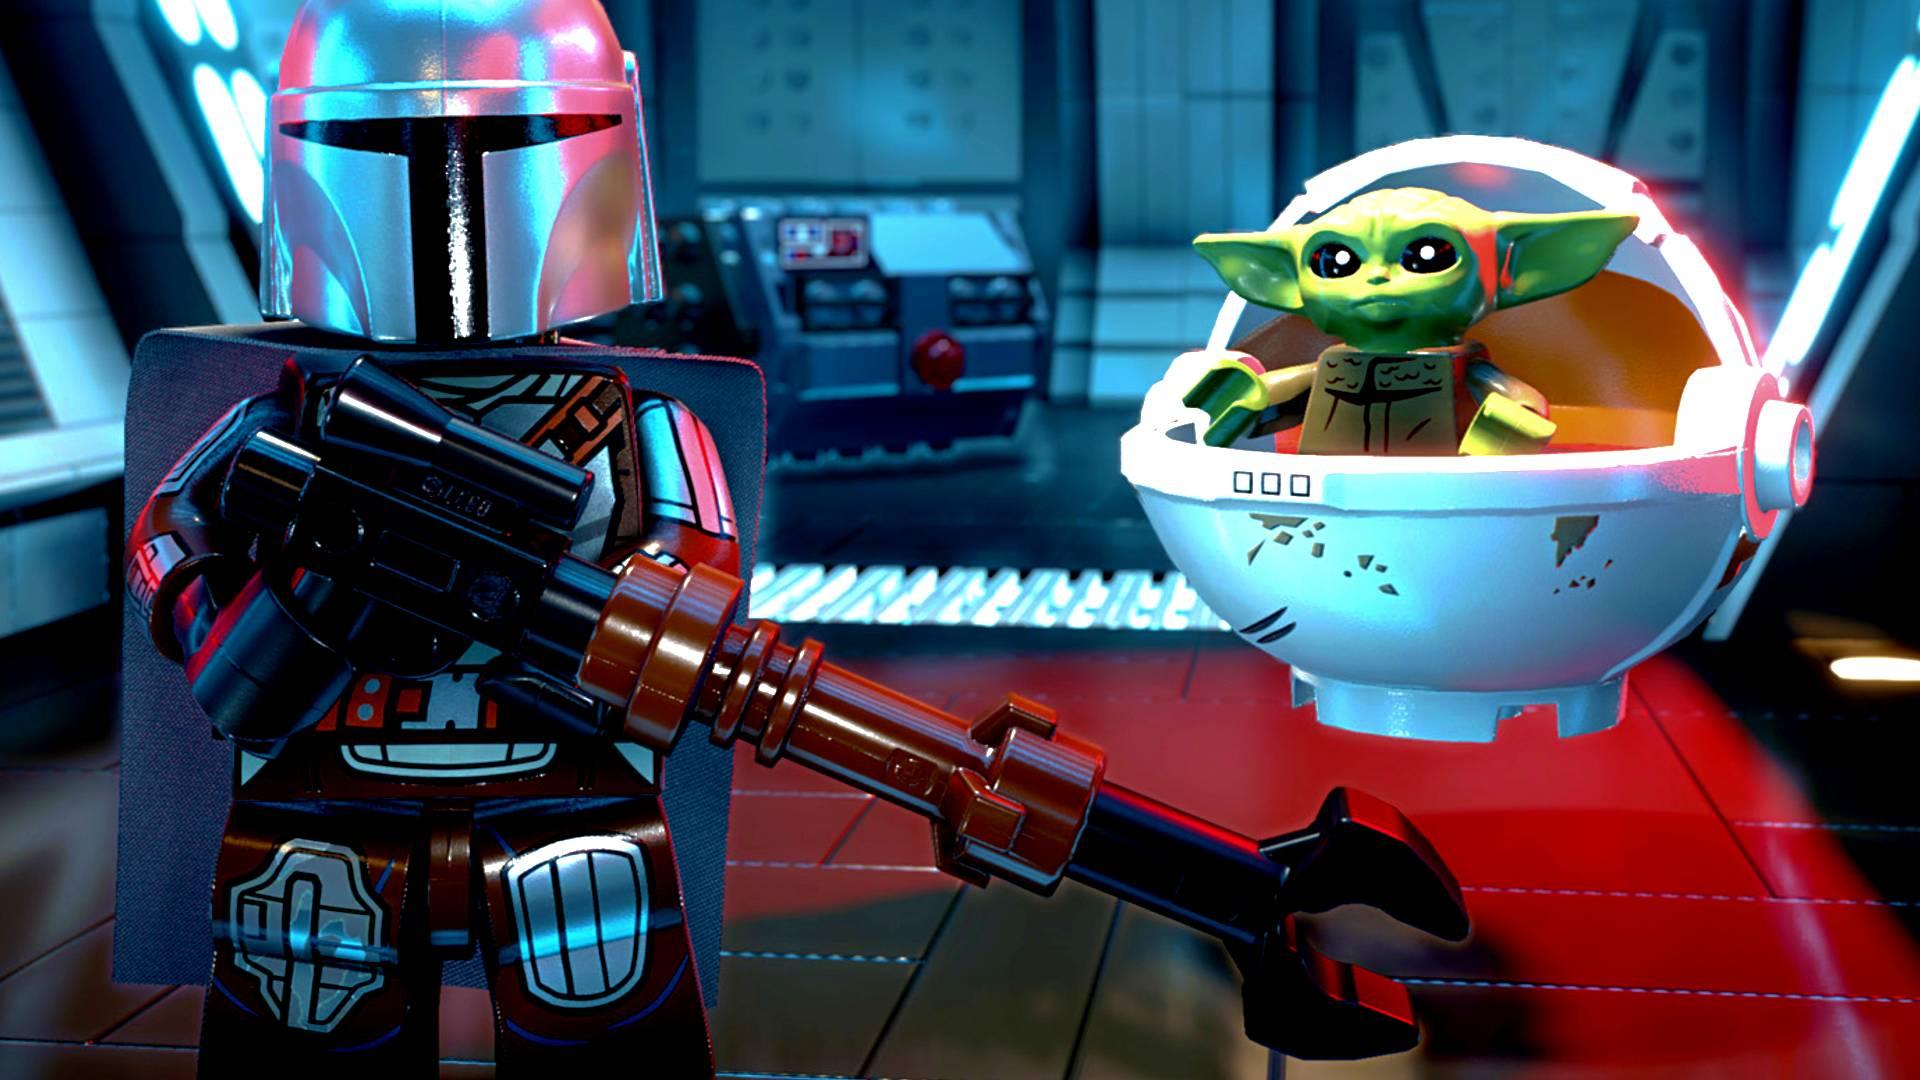 LEGO Star Wars: The Skywalker Saga contará com DLCs baseadas em Rogue One,  Solo e The